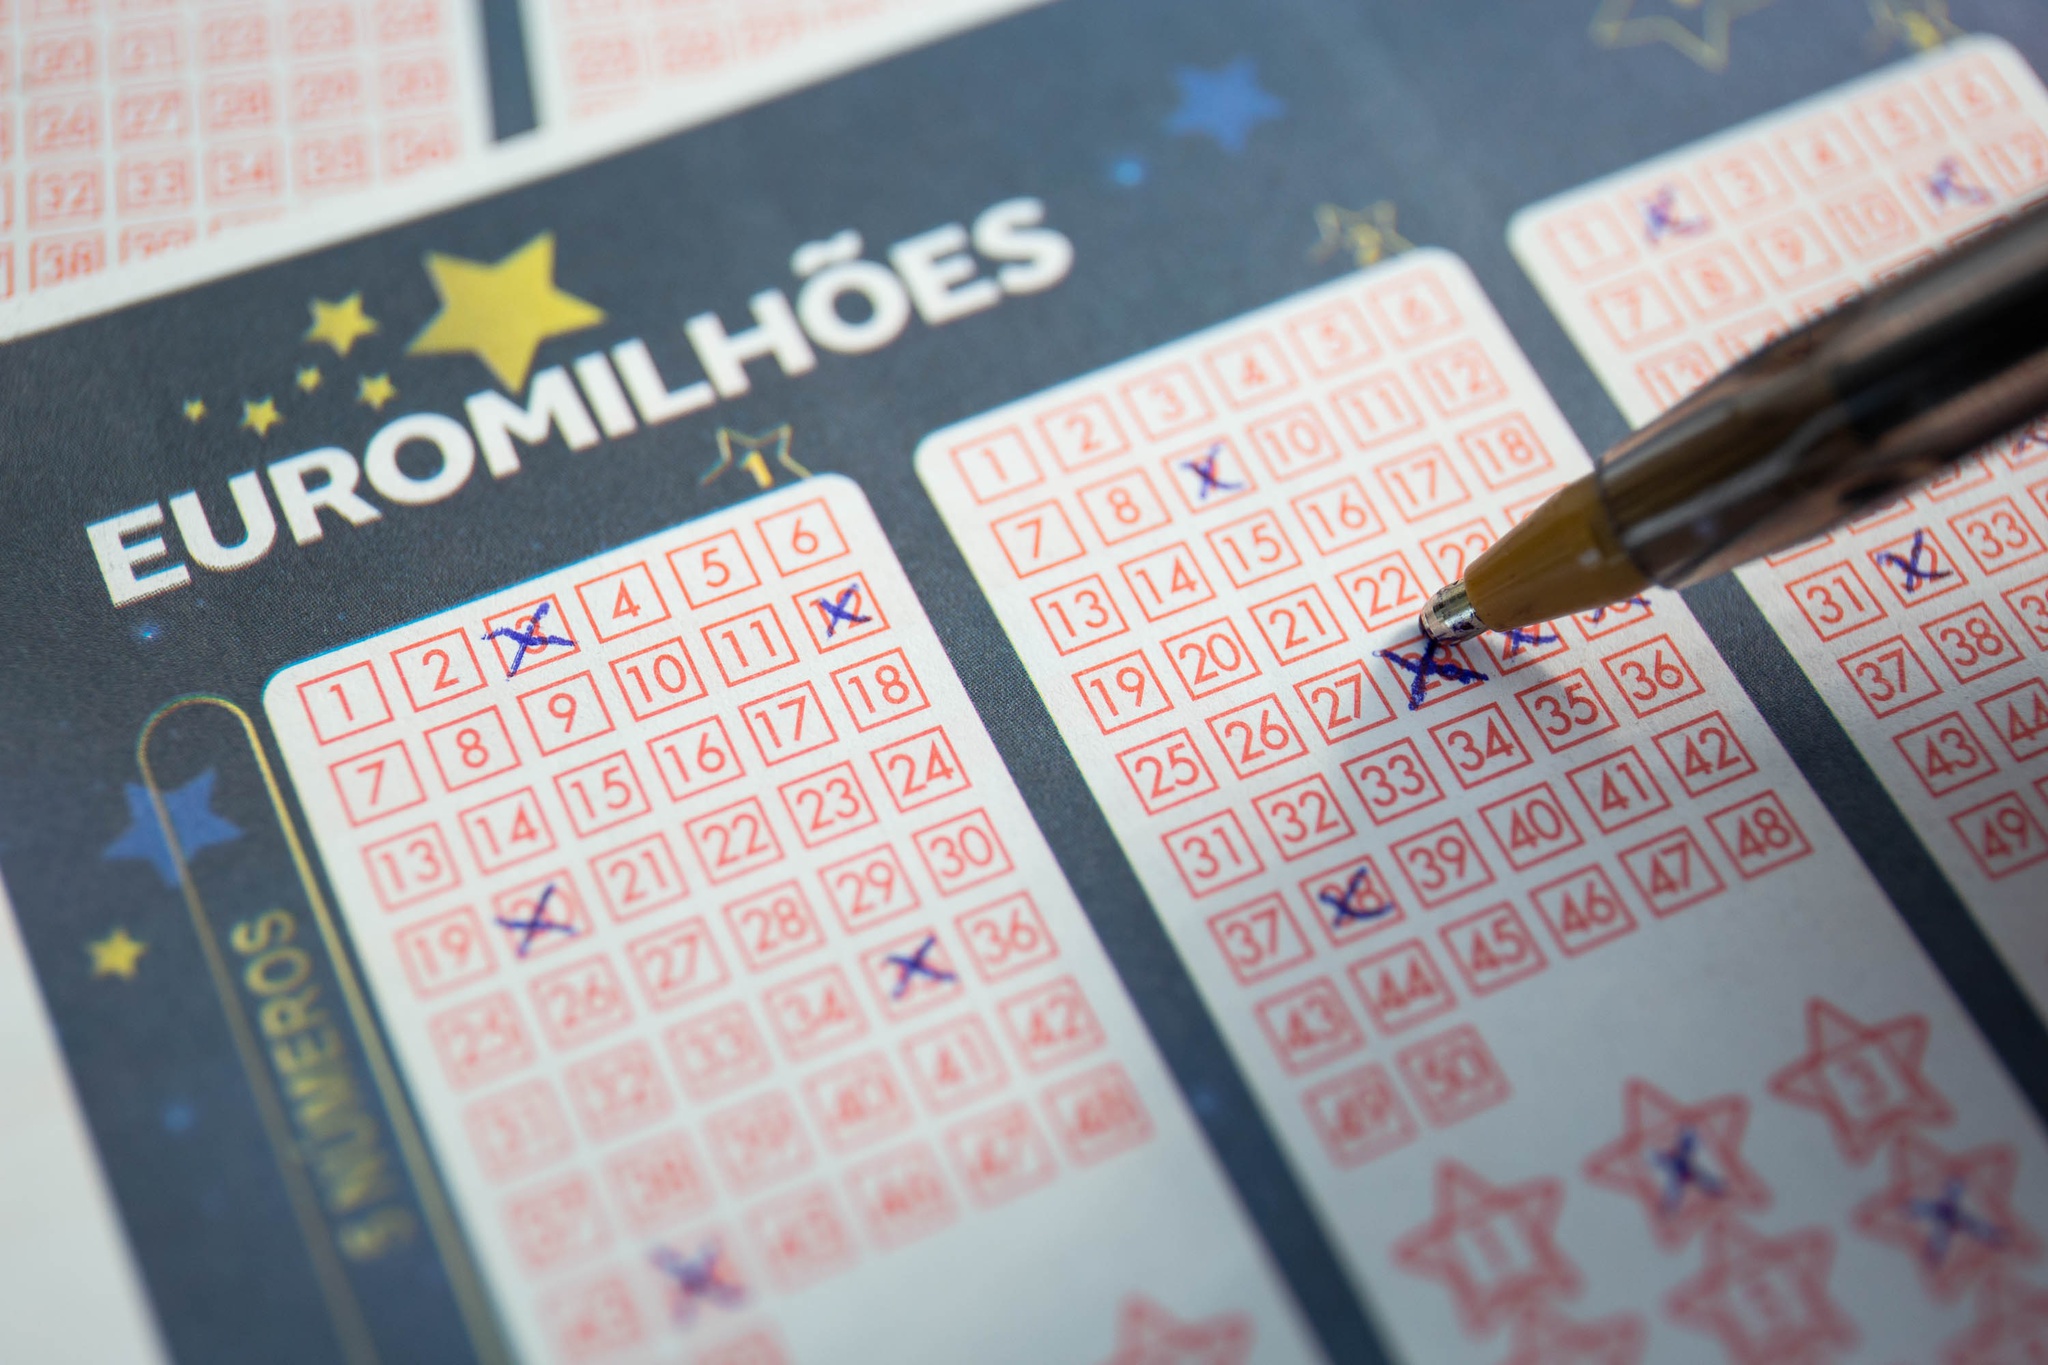 Euromilhões: os 5 maiores jackpots ganhos